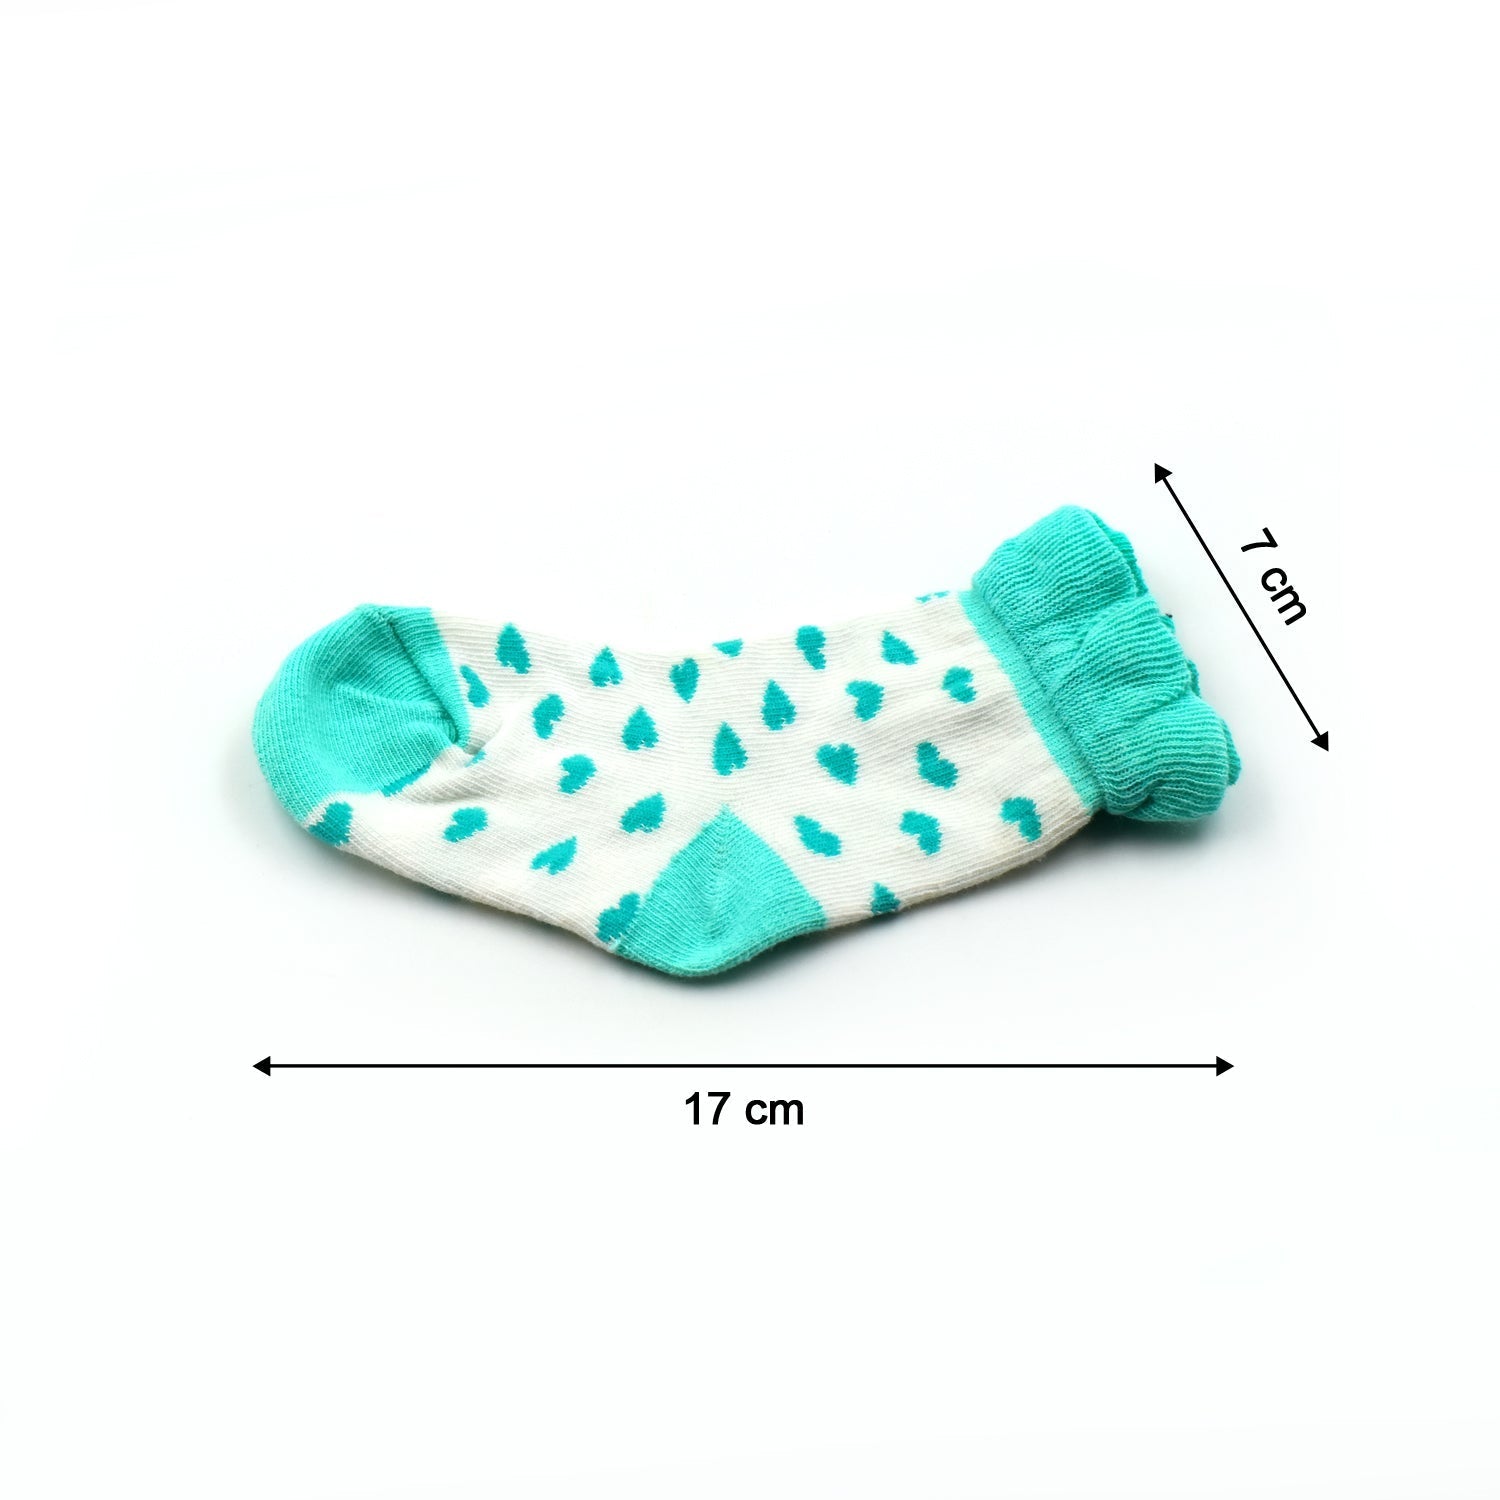 7346 Small Size Baby Girls Fashion Socks Dukandaily